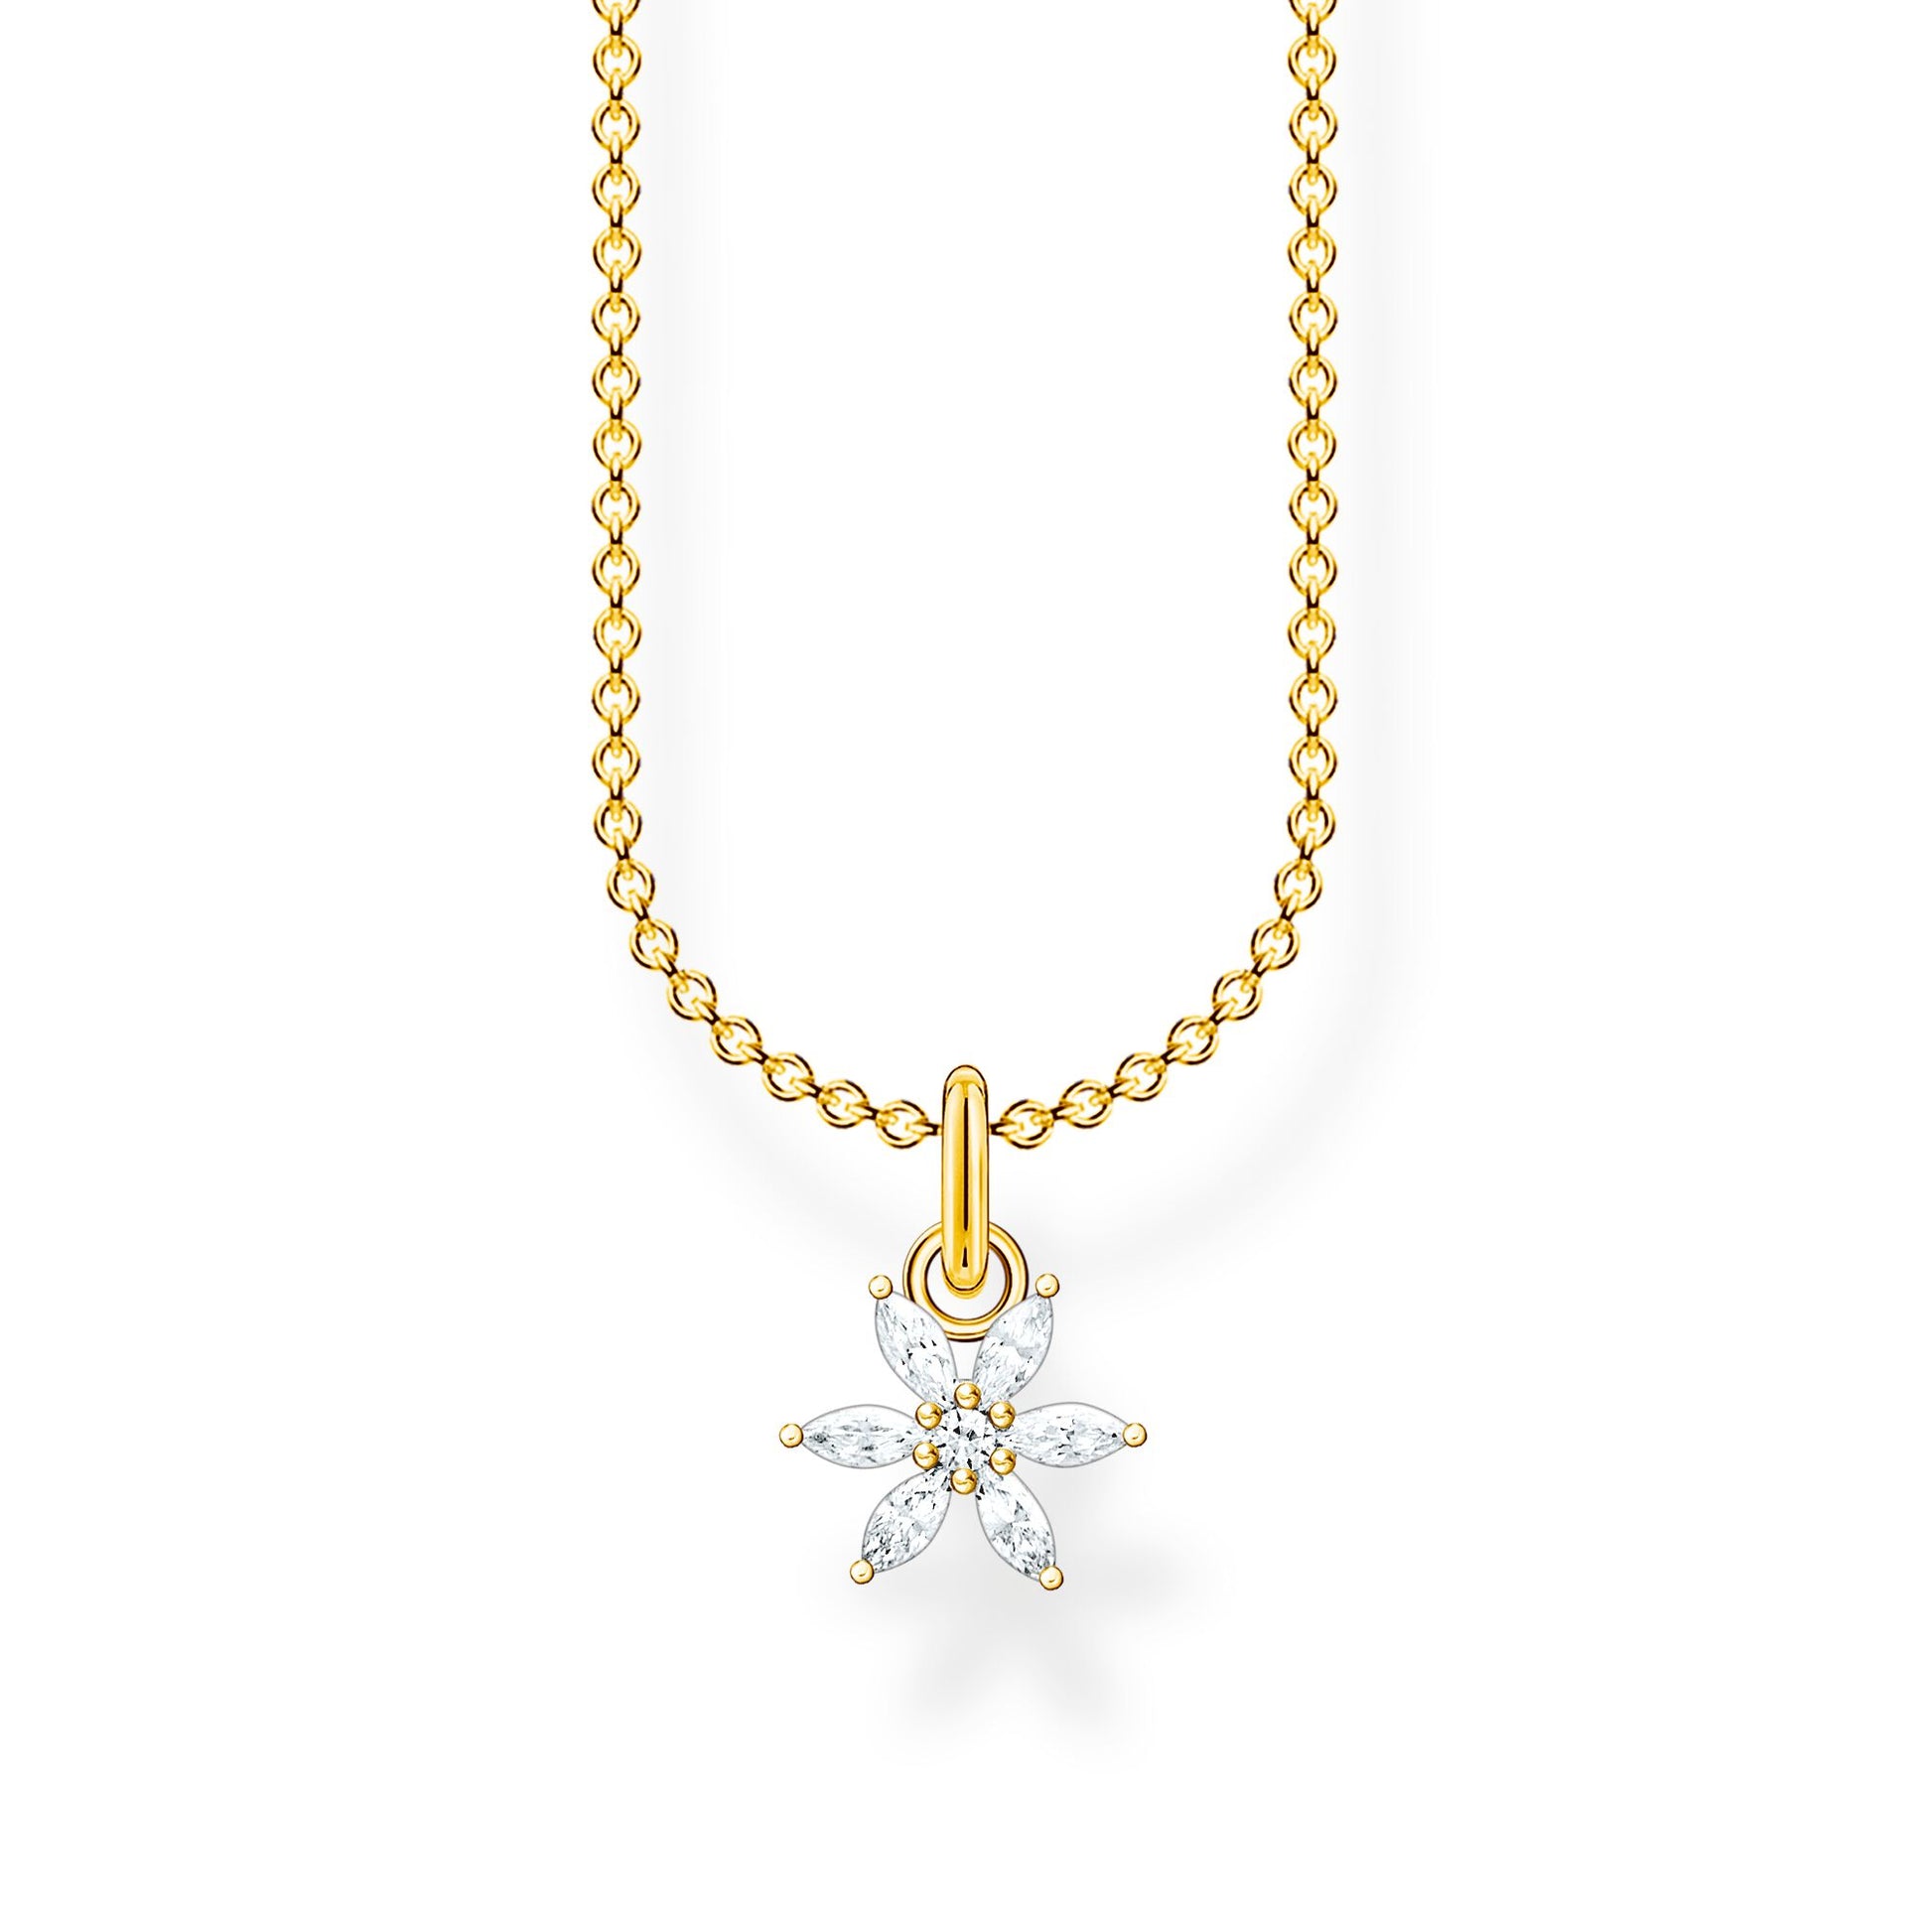 THOMAS SABO in und DONKEL mit Blume – Silber Zirkonia Uhren vergoldet Schmuck Halskette & 